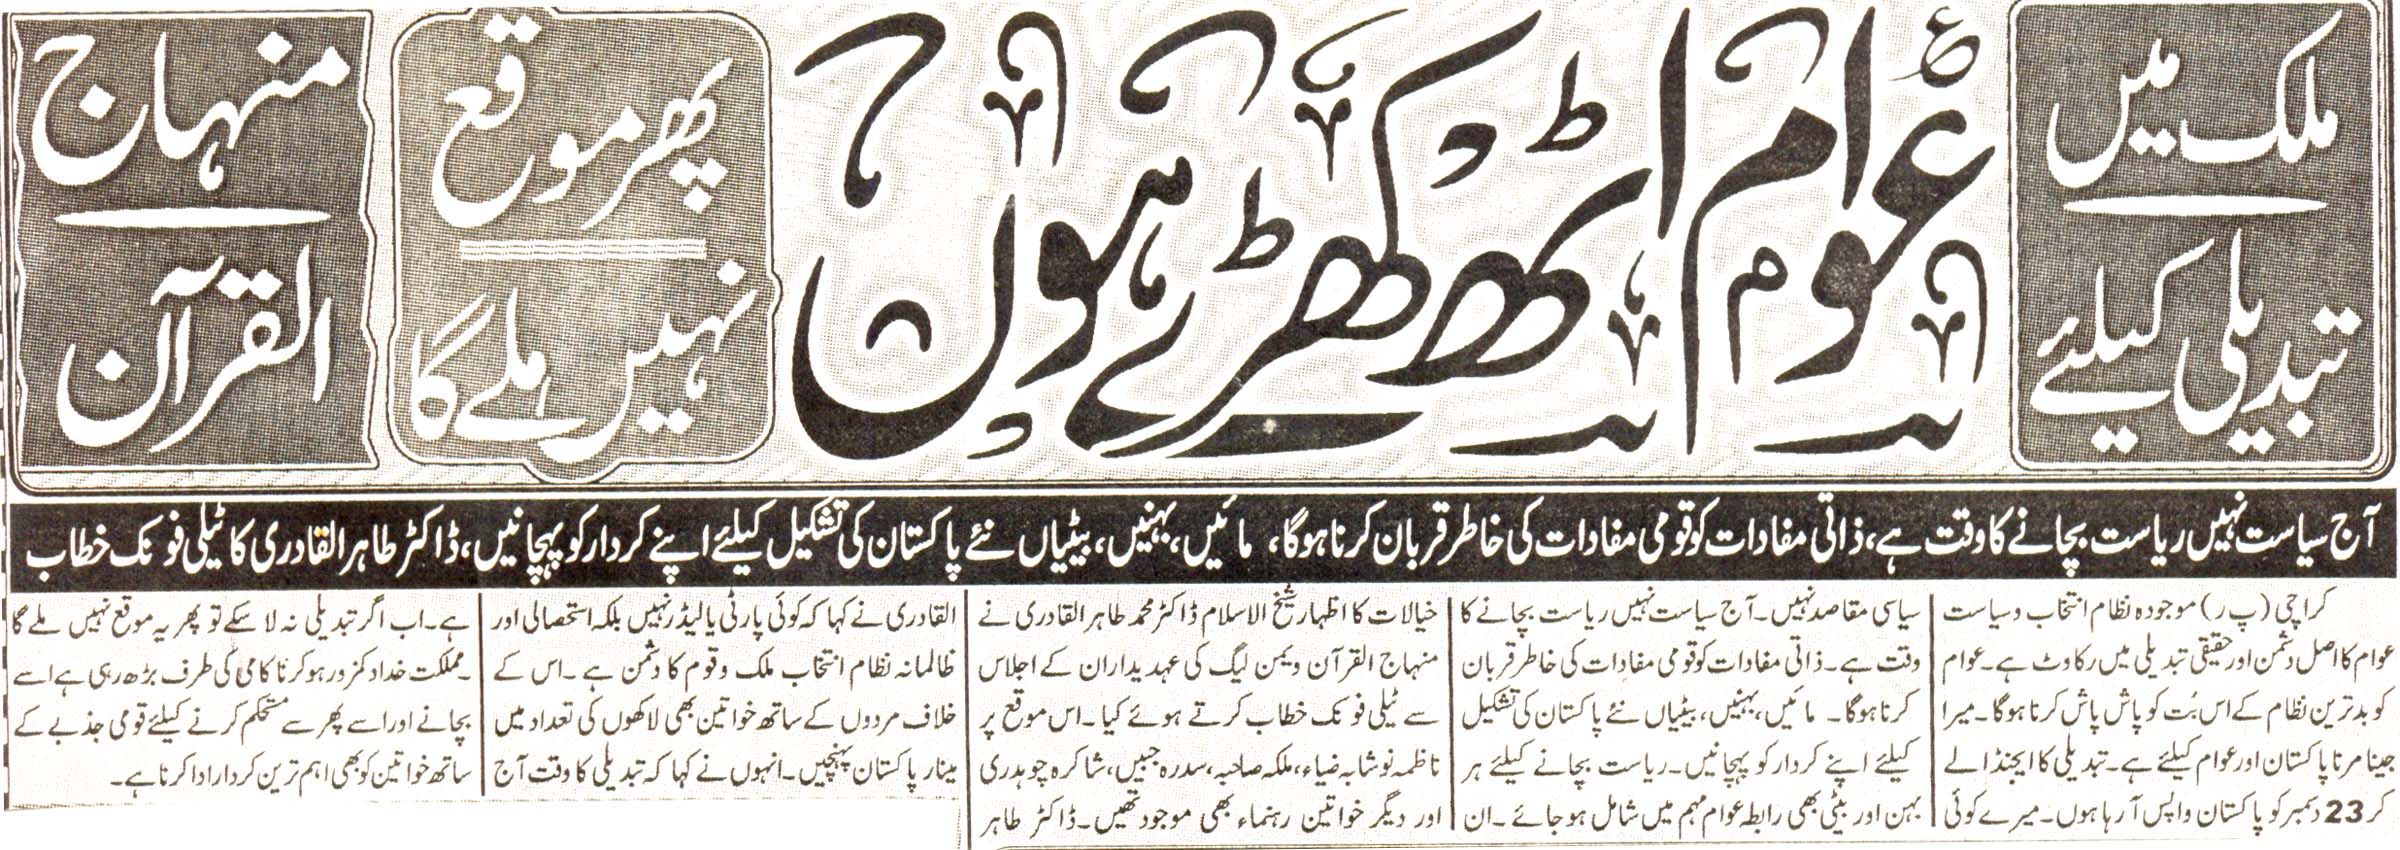 Minhaj-ul-Quran  Print Media Coveragedaily Eman page 2